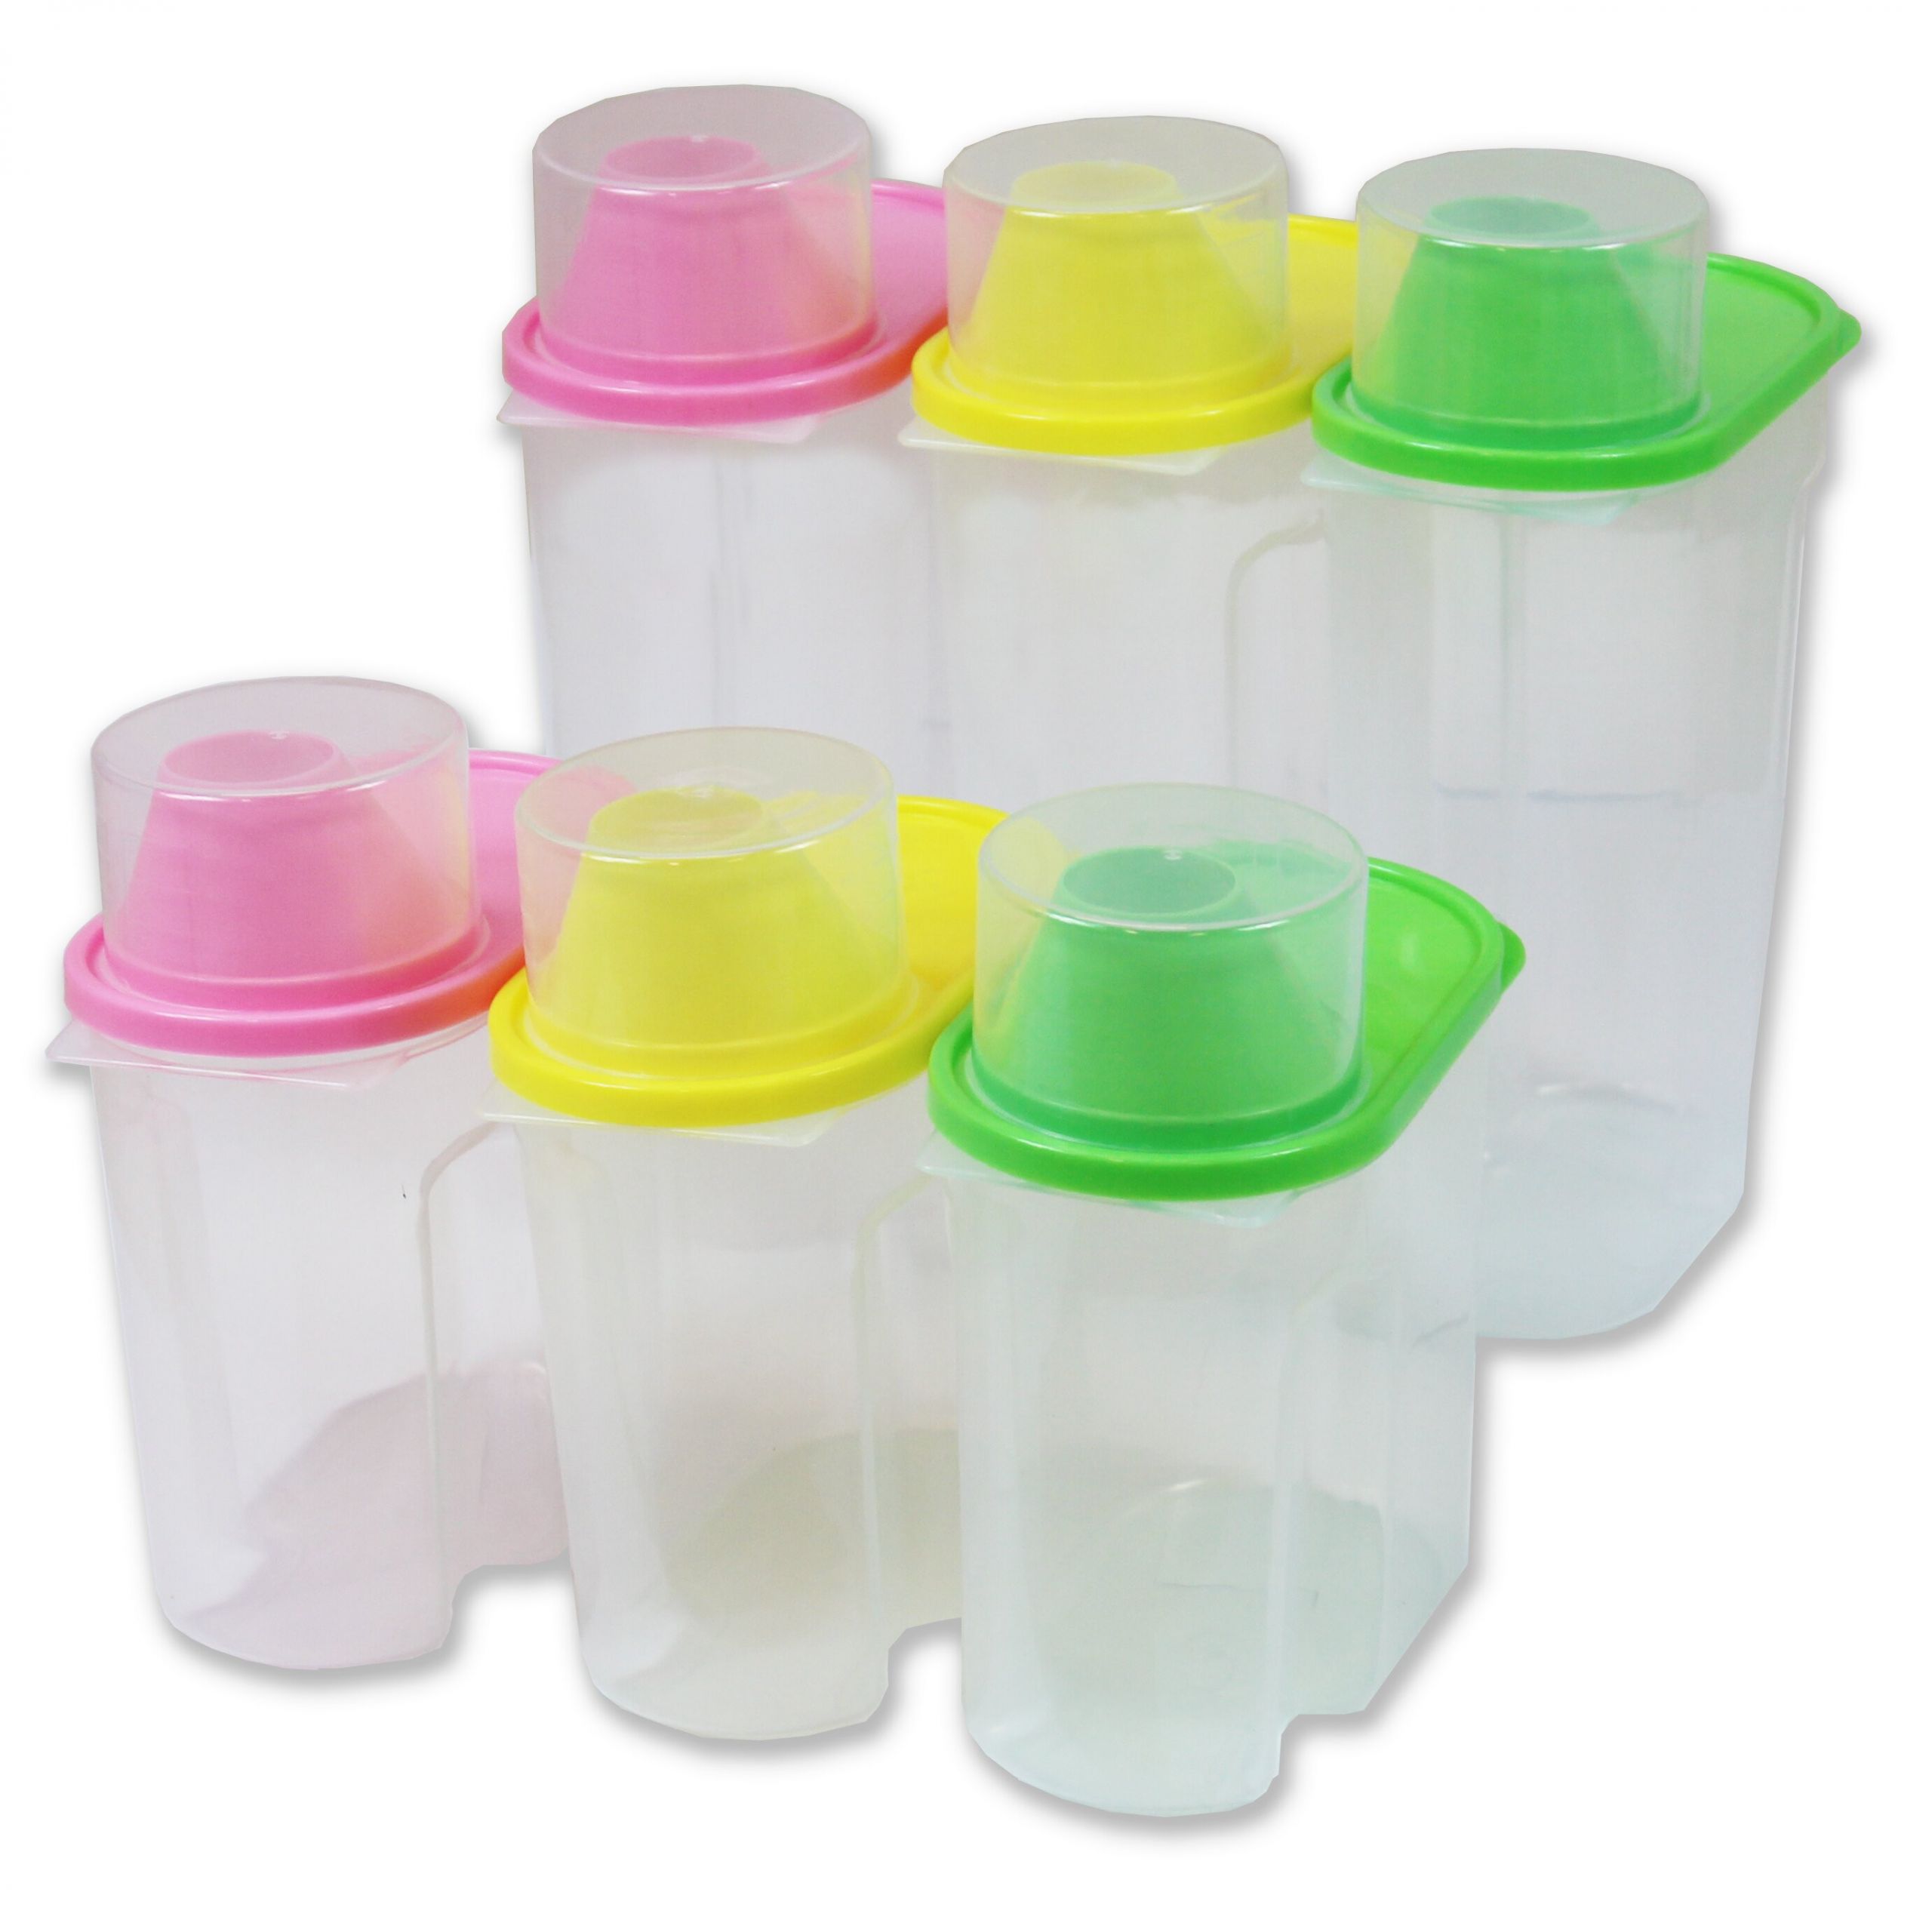 Kitchen Storage Container Sets
 Basicwise Plastic Kitchen Food Saver 12 Piece Food Storage